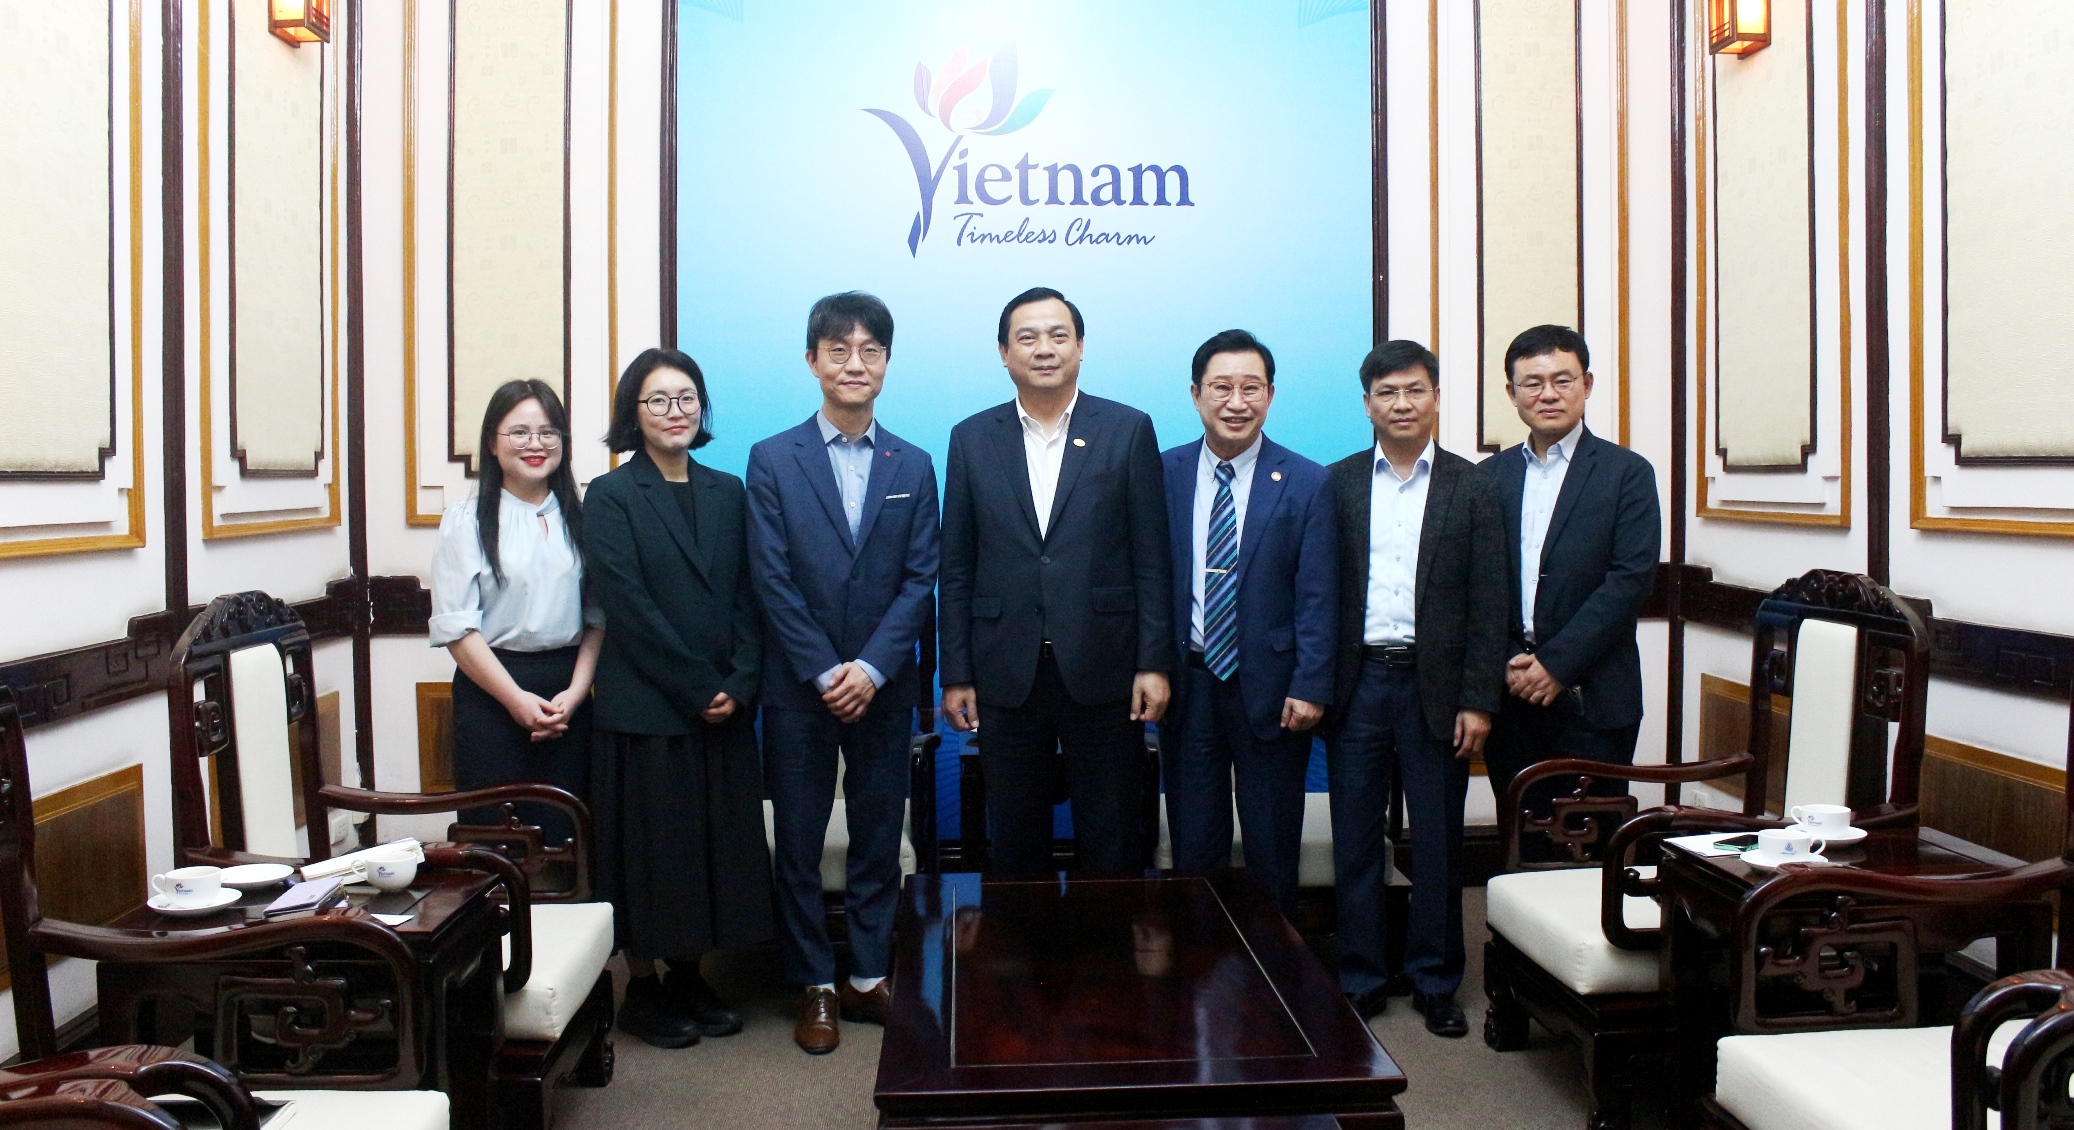 Tổng Giám đốc Lotte World Việt Nam Lee Hae Yeol chụp ảnh lưu niệm cùng đại diện Cục Du lịch Quốc gia Việt Nam